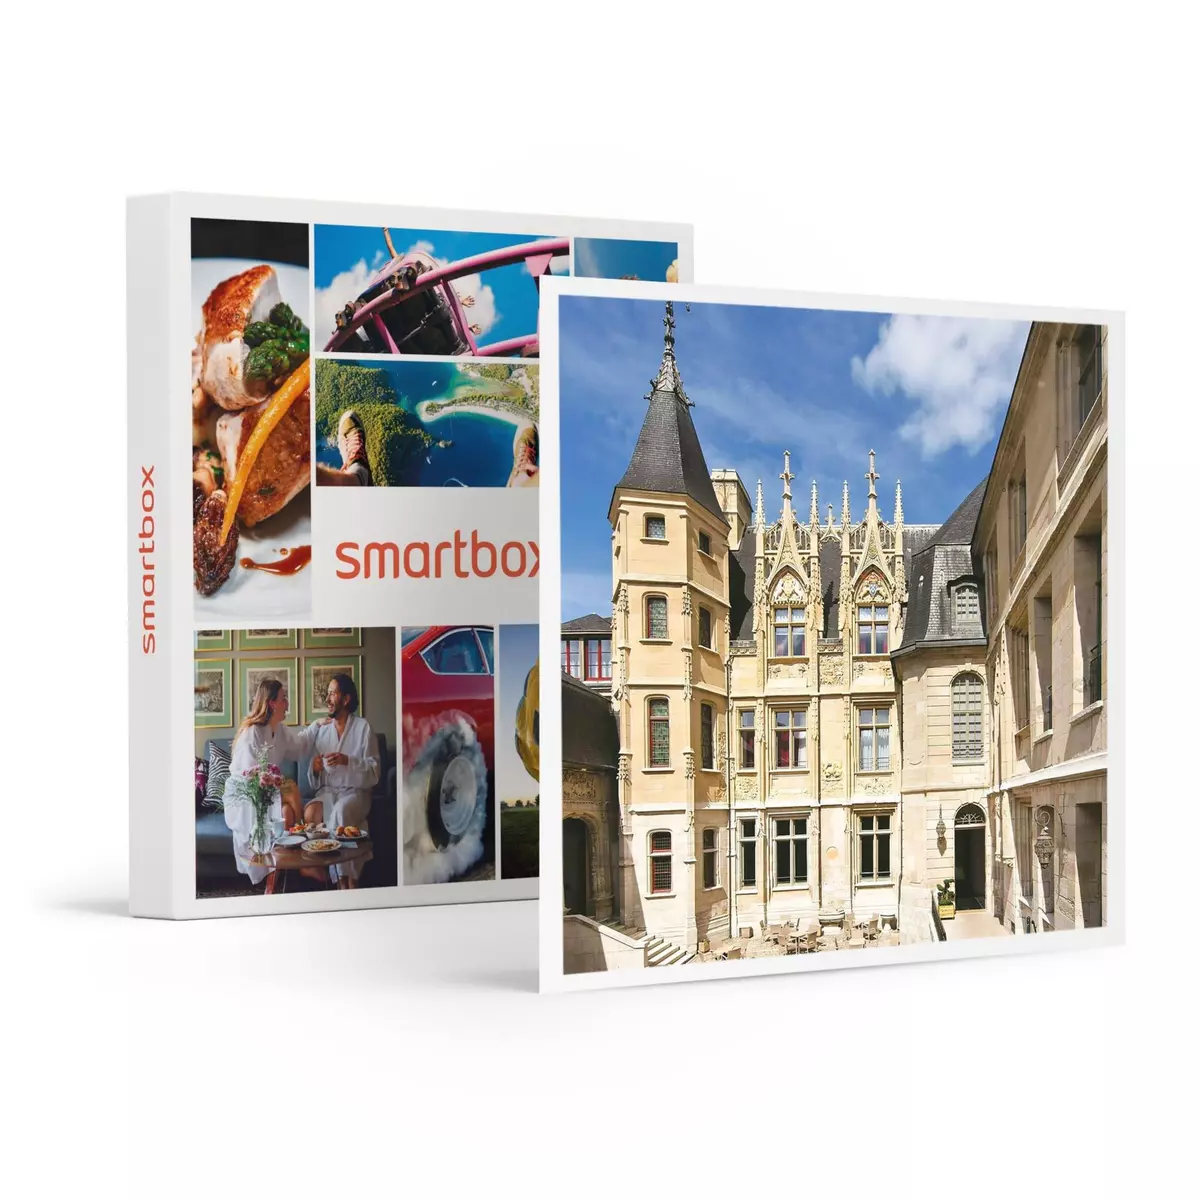 Smartbox Séjour de luxe à Rouen : 3 jours en hôtel 5* avec dîner et accès illimité à l'espace bien-être - Coffret Cadeau Séjour